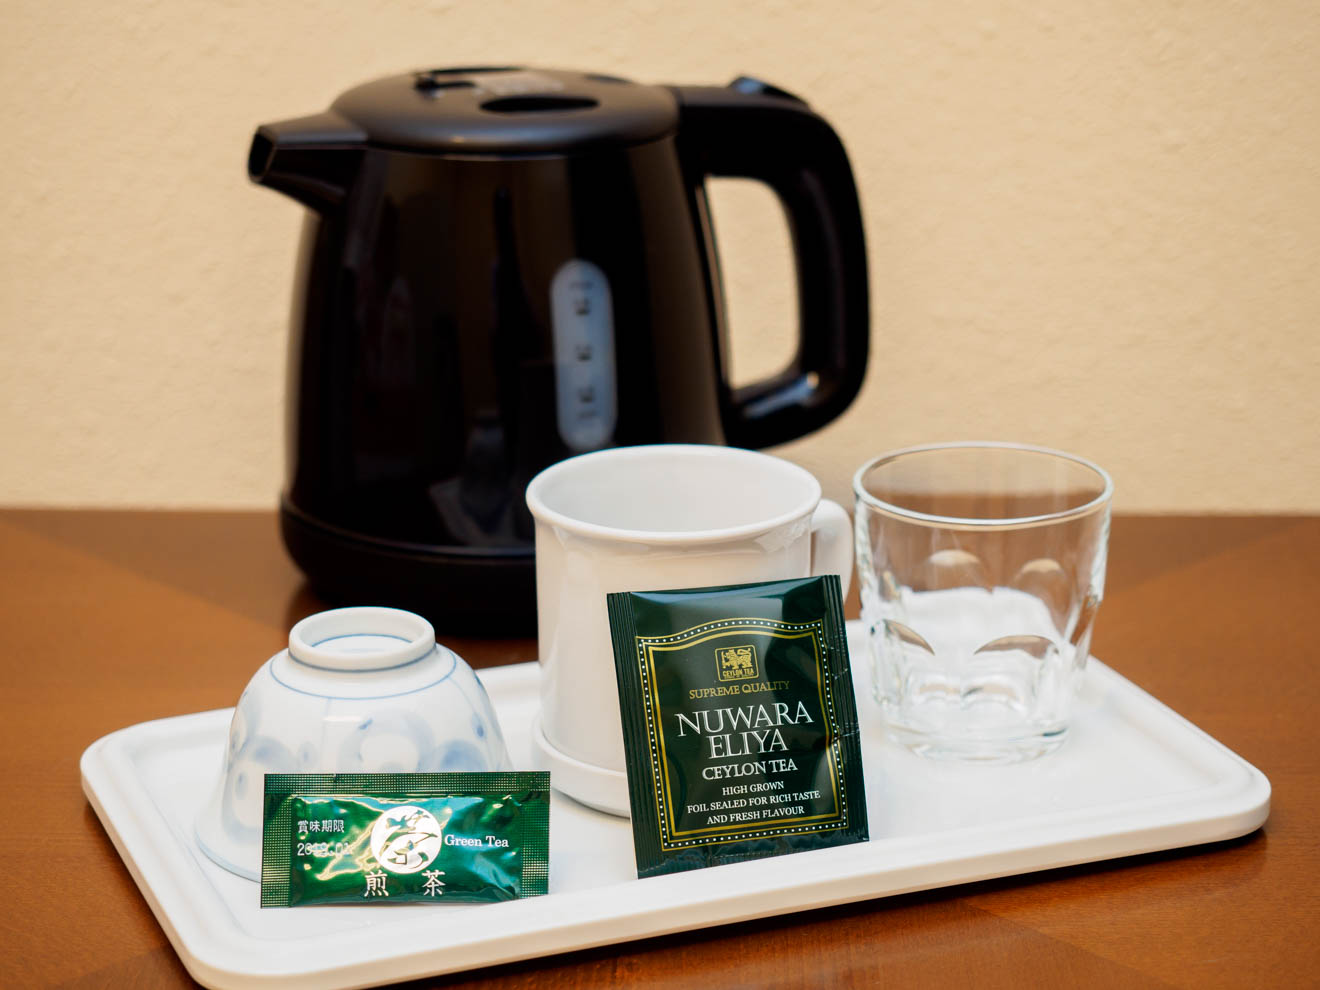 ■客室茶器セット■　電気ポット・マグカップ・湯呑・グラスを設置。紅茶・煎茶をお楽しみいただけます。